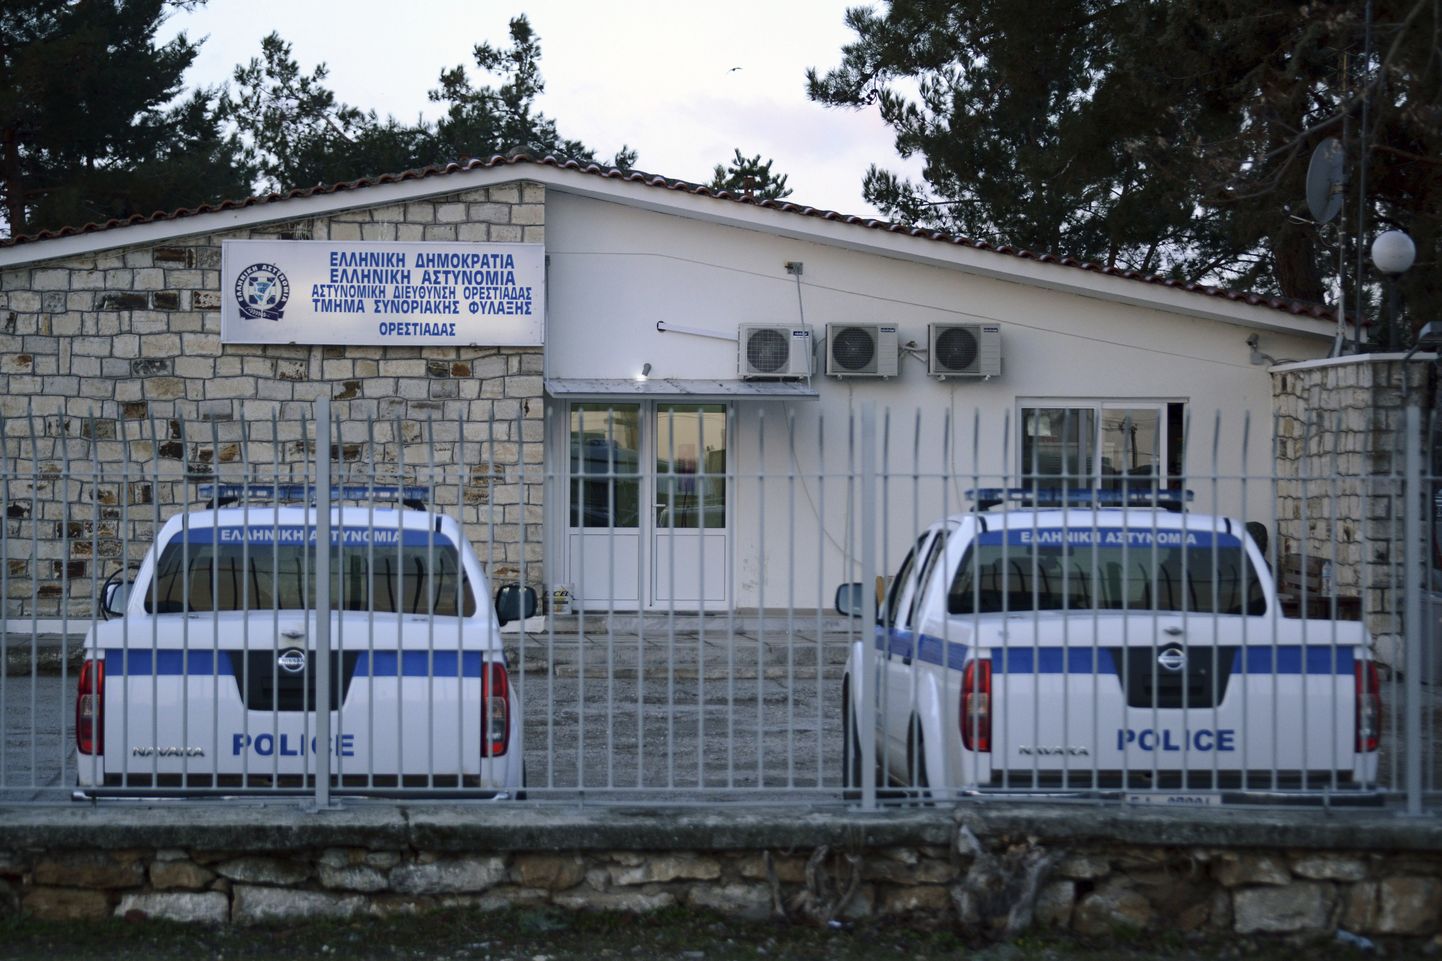 Kreeka politseiautod.